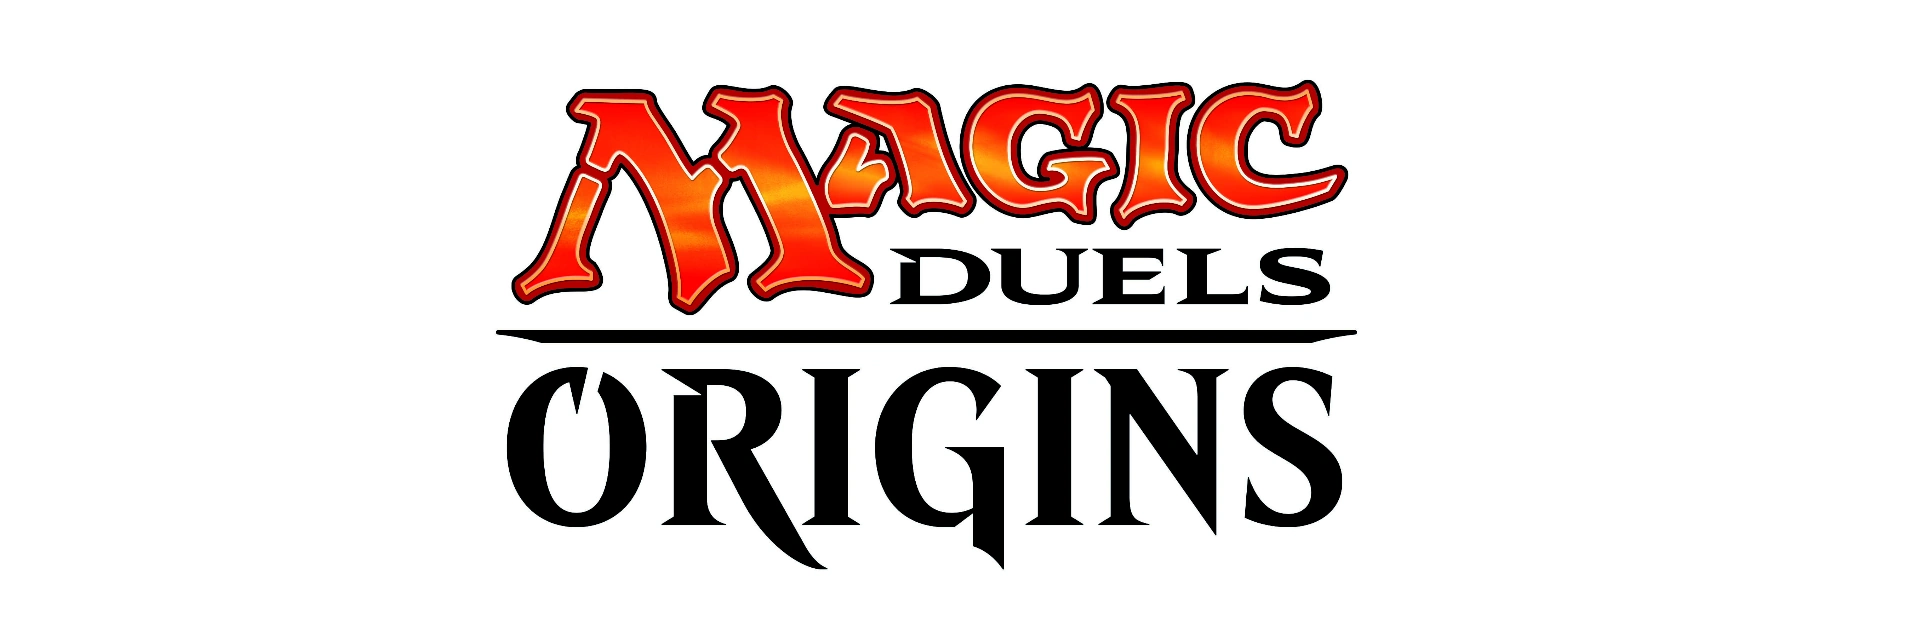 دانلود بازی Magic duels origins برای کامپیوتر | گیمباتو